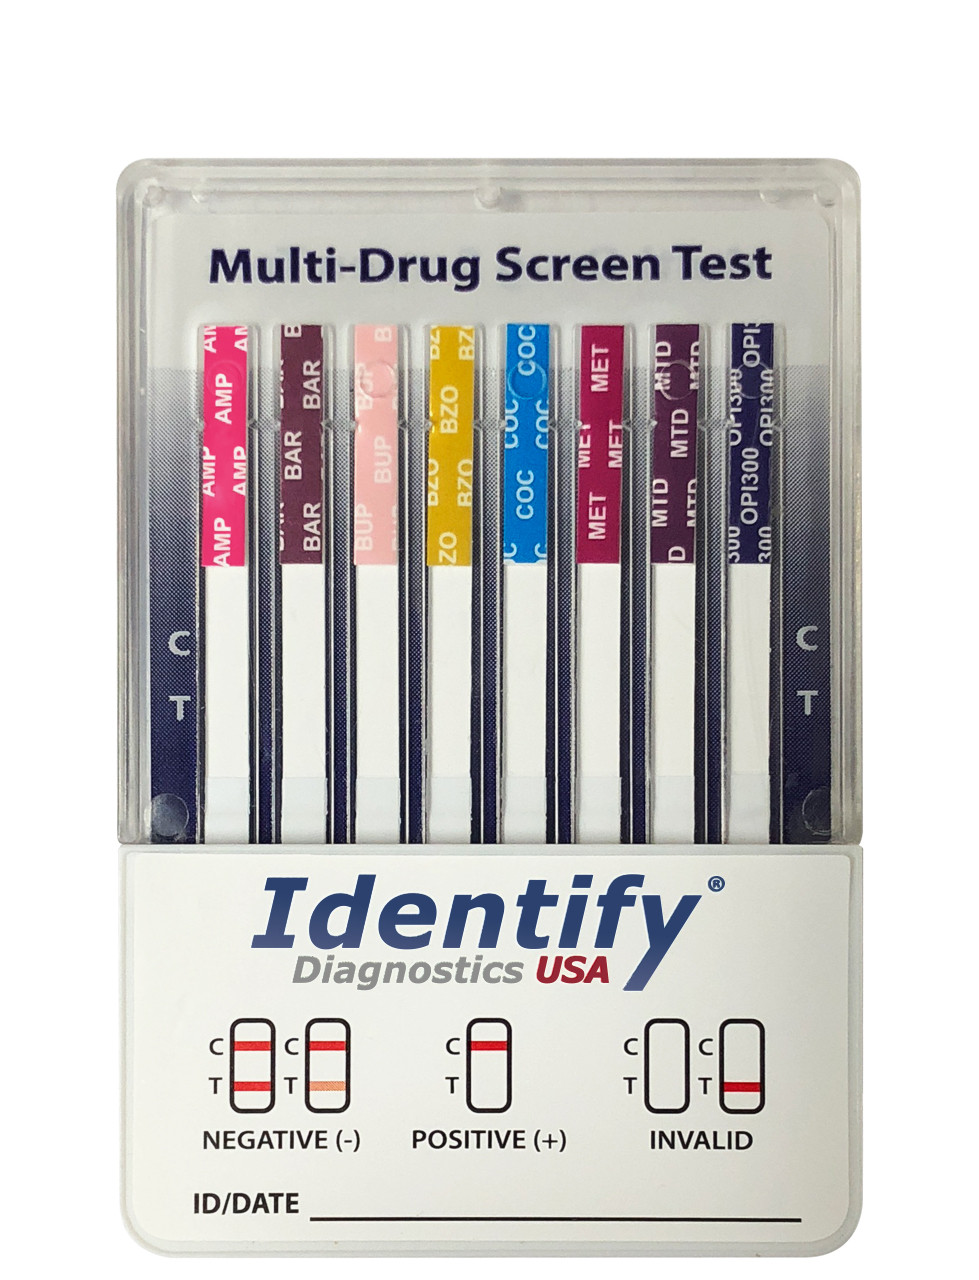 DIP-multi drug screen test - Labymed, S.A.